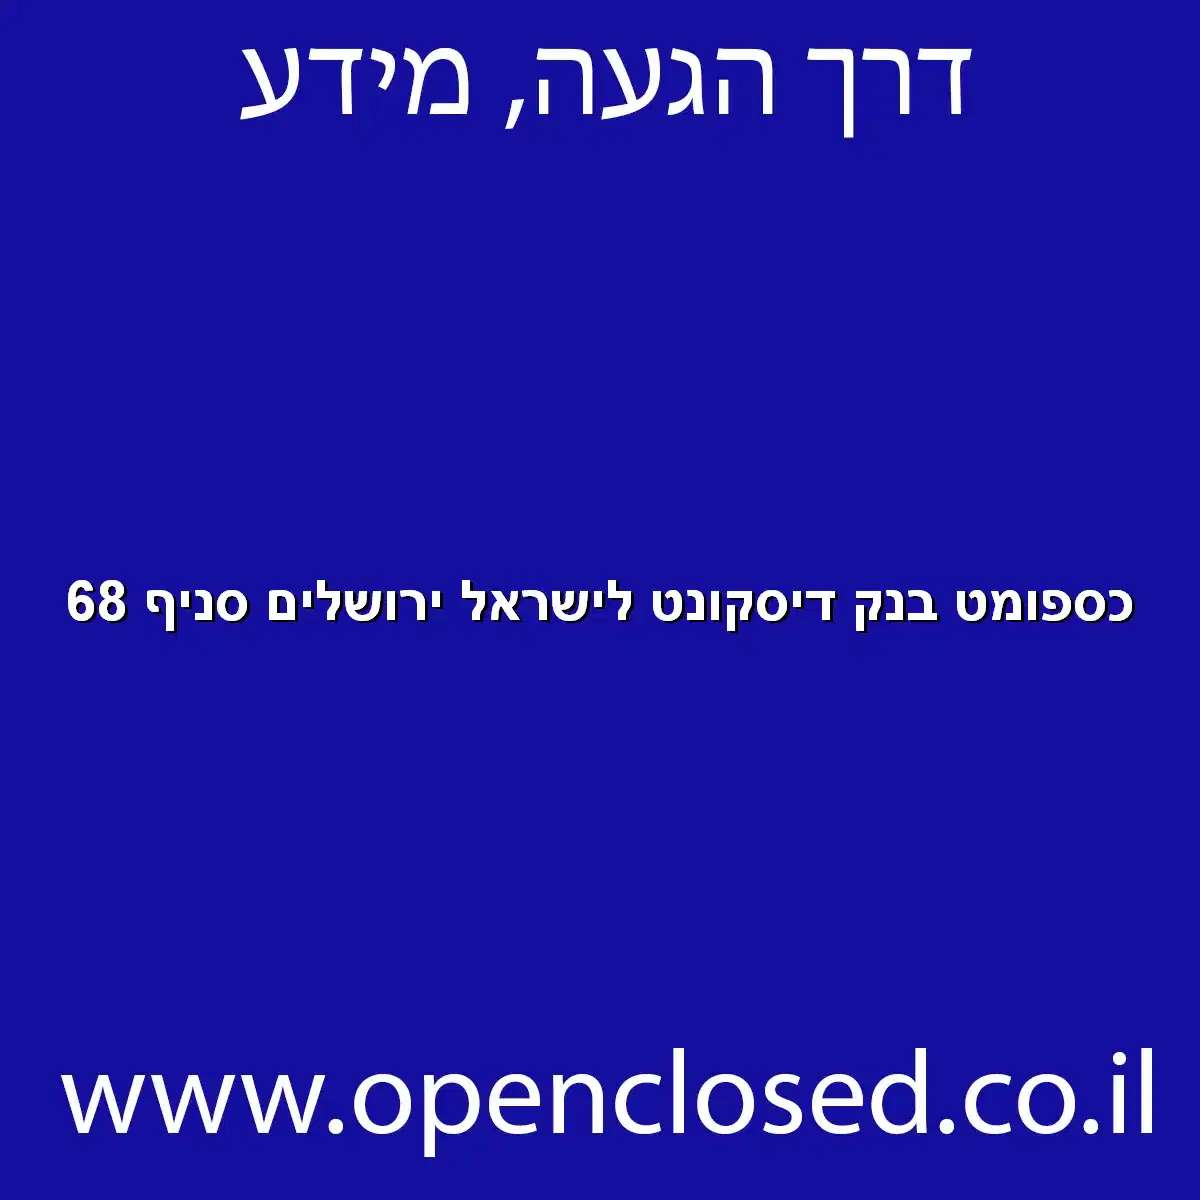 כספומט בנק דיסקונט לישראל ירושלים סניף 68